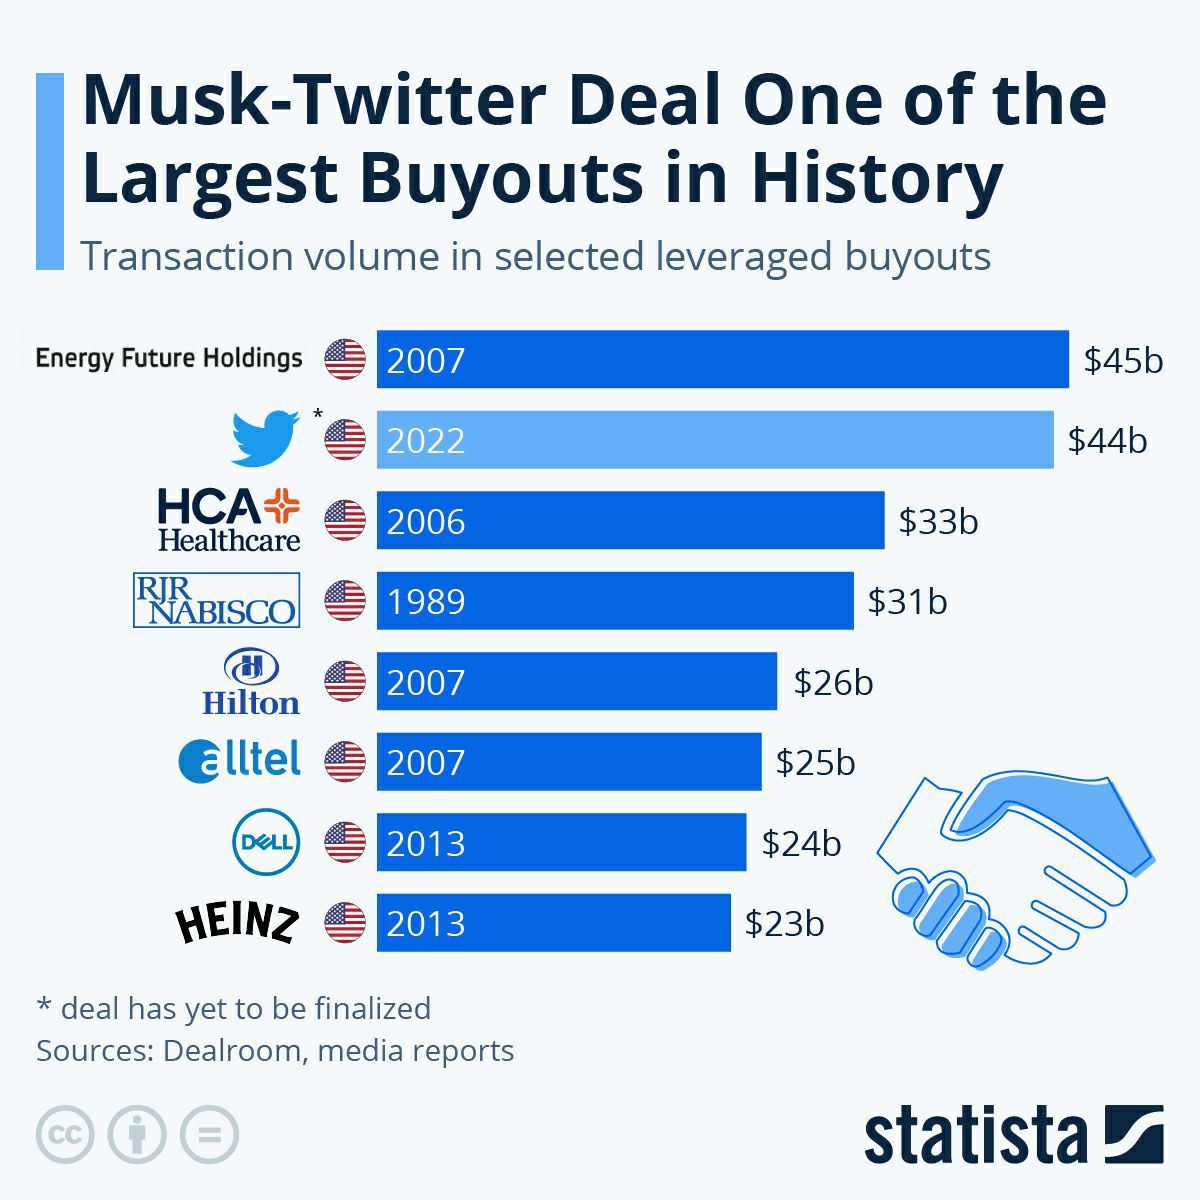 Покупка Твиттера стала одной из крупнейших сделок по выкупу компаний в истории